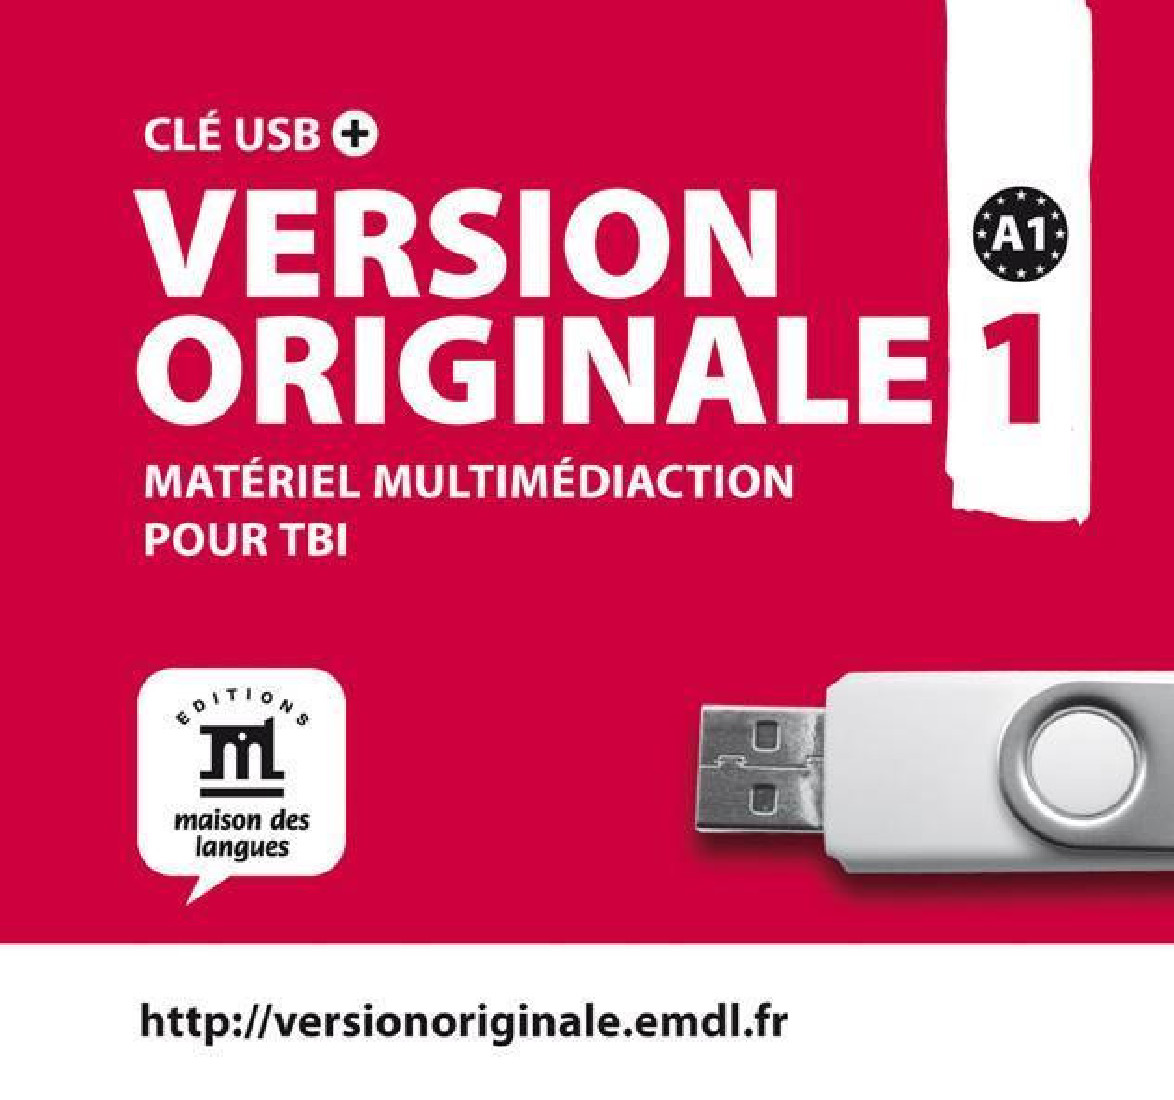 VERSION ORIGINALE 1 USB